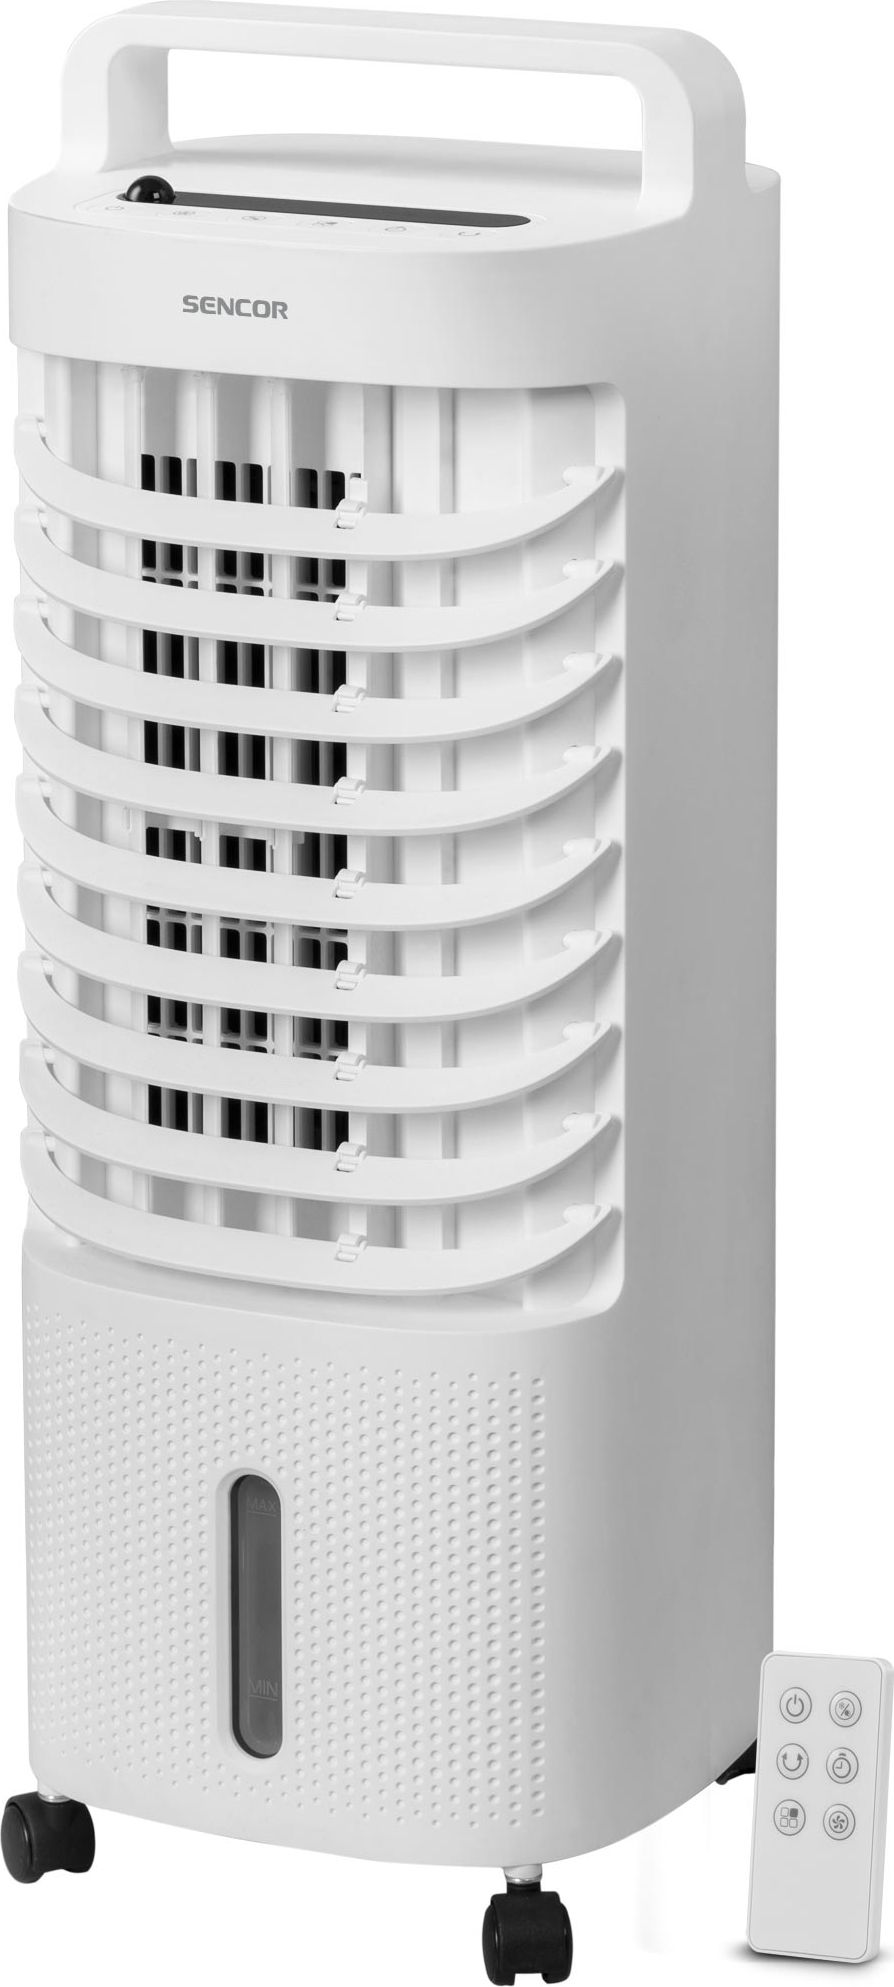 Ventilator cu racitor si purificator de aer portabil Sencor SFN 5011WH, Racire/Umidificare/Purificare, Telecomanda, Temporizator 1-8 ore Rezervor apa 3 l, Alb